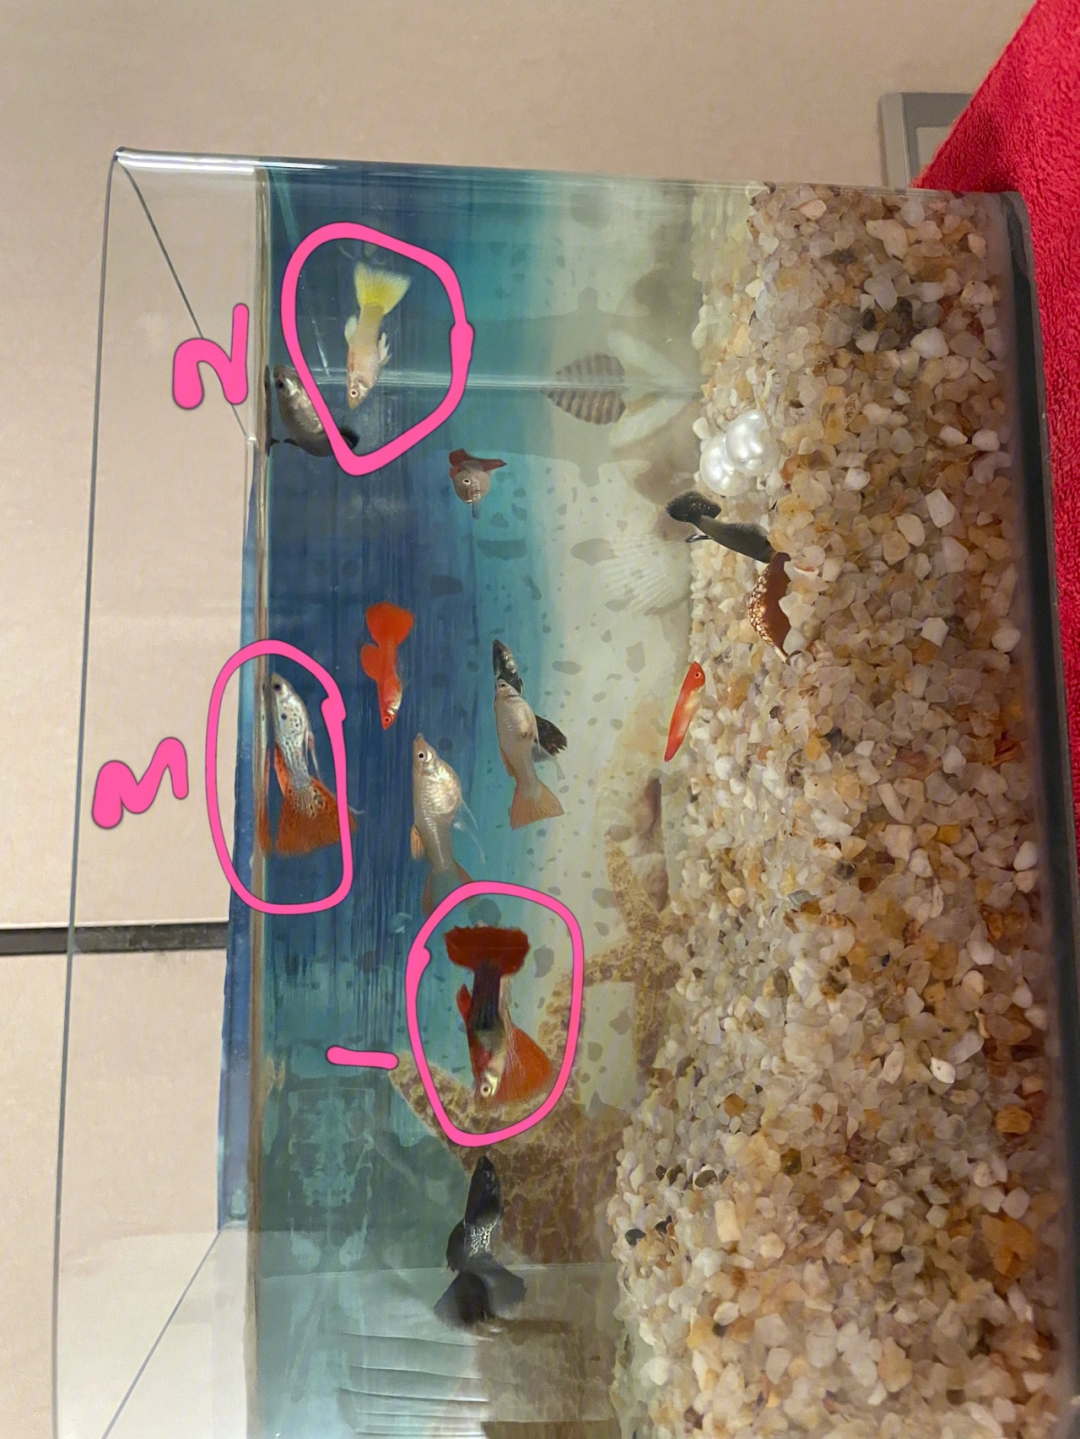 热带孔雀鱼繁殖过程图片